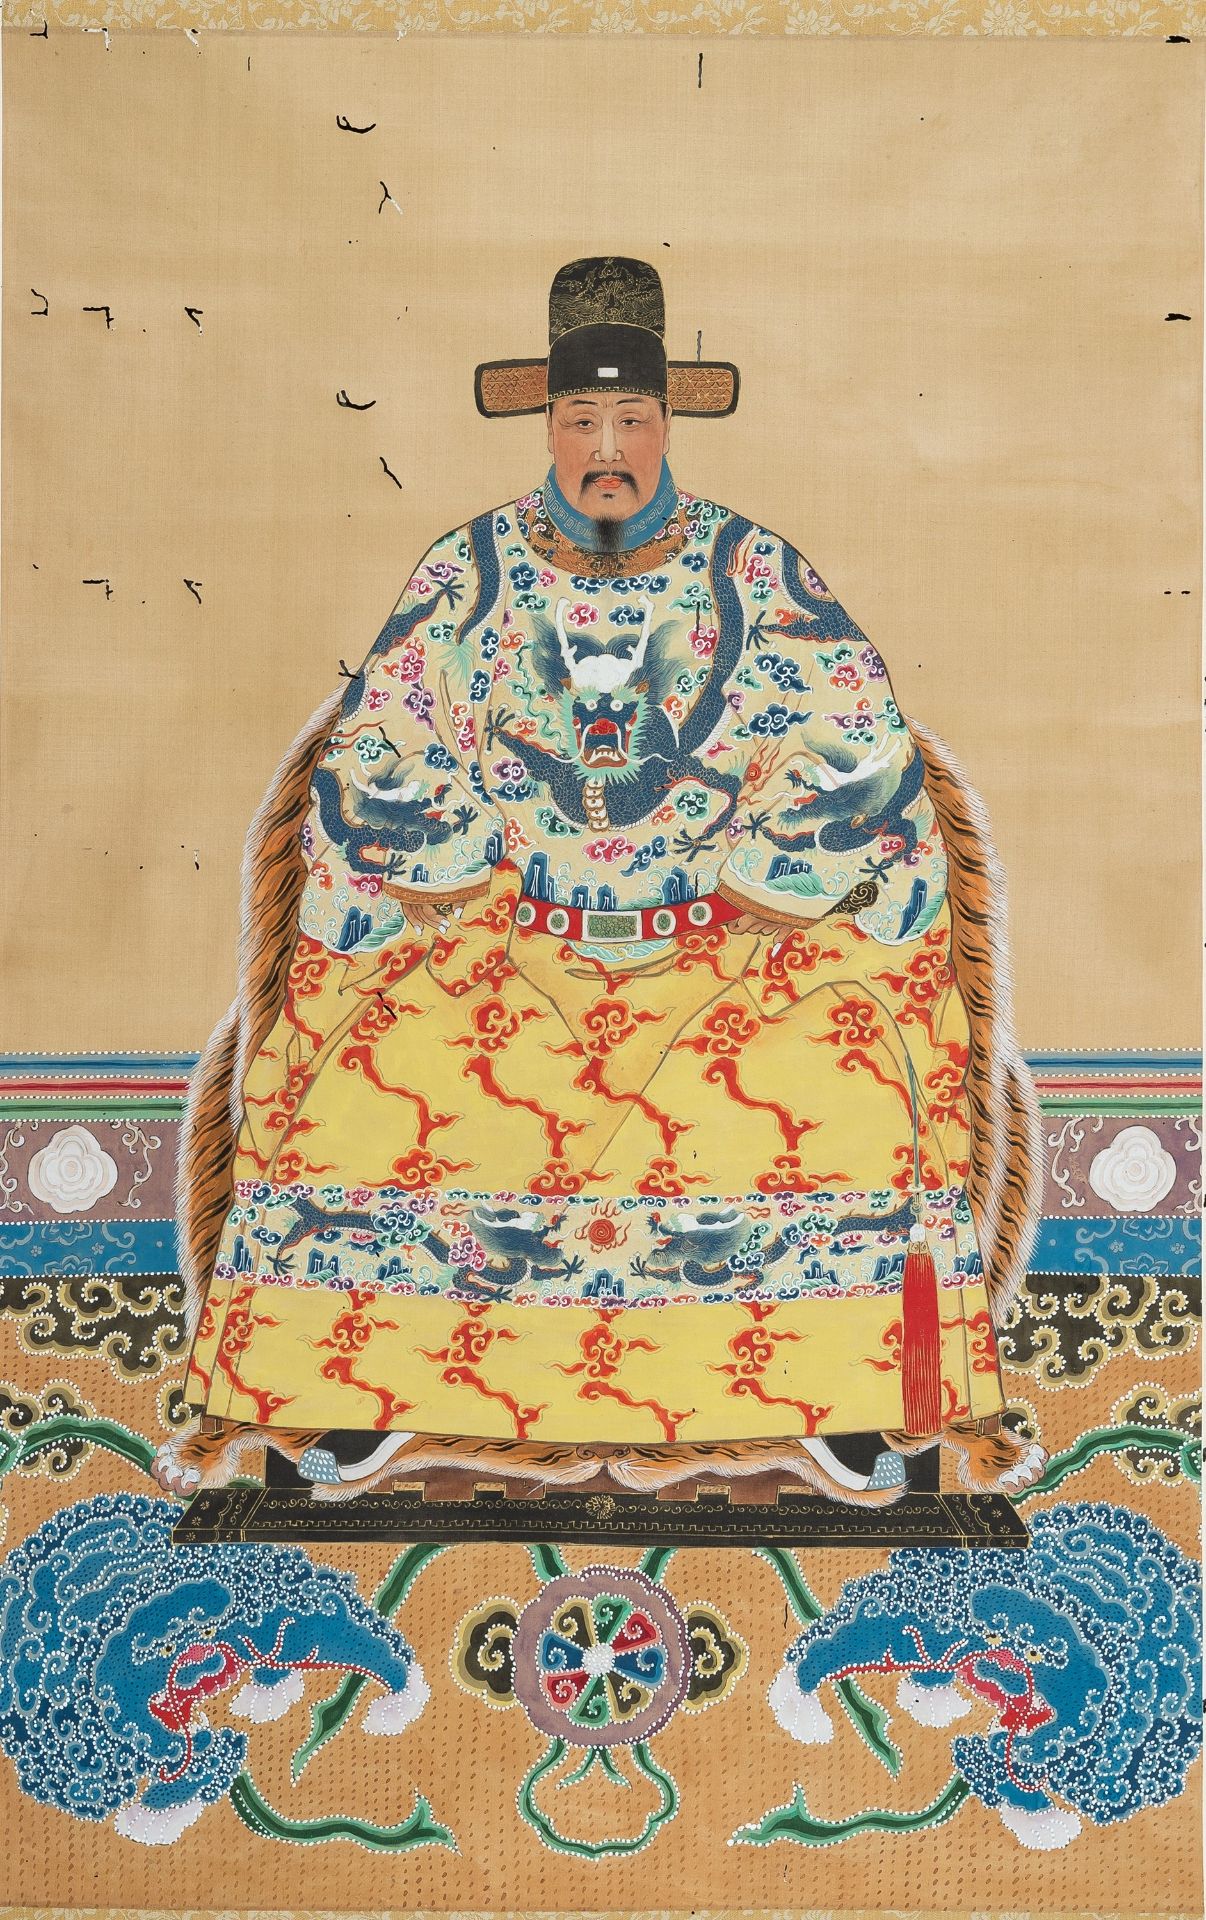 PORTRAIT OF THE EMPEROR HONGWU', QING DYNASTY